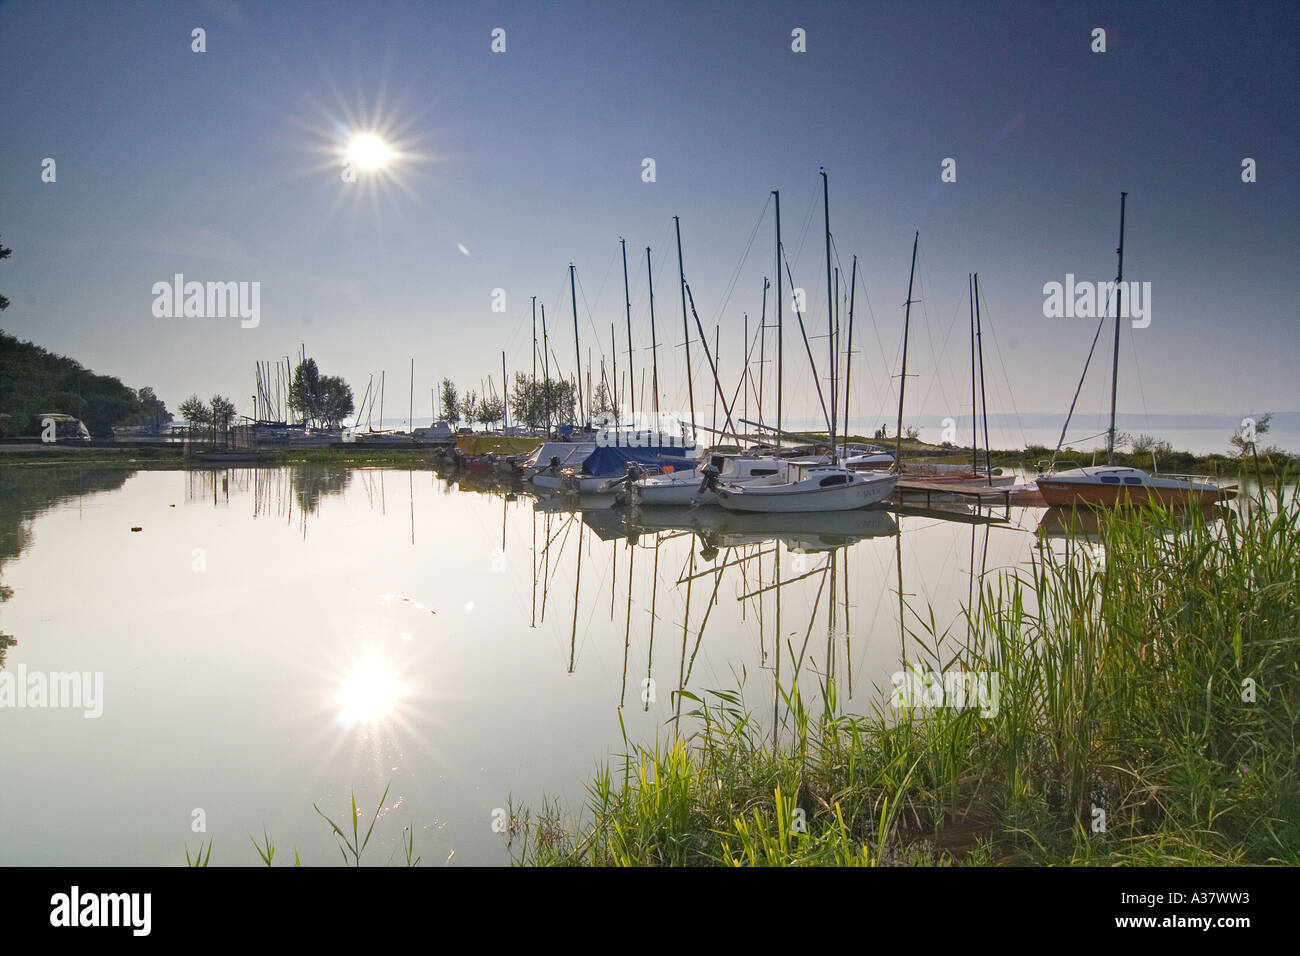 Lac Balaton siofok location de bateau navire port ciel soleil Banque D'Images